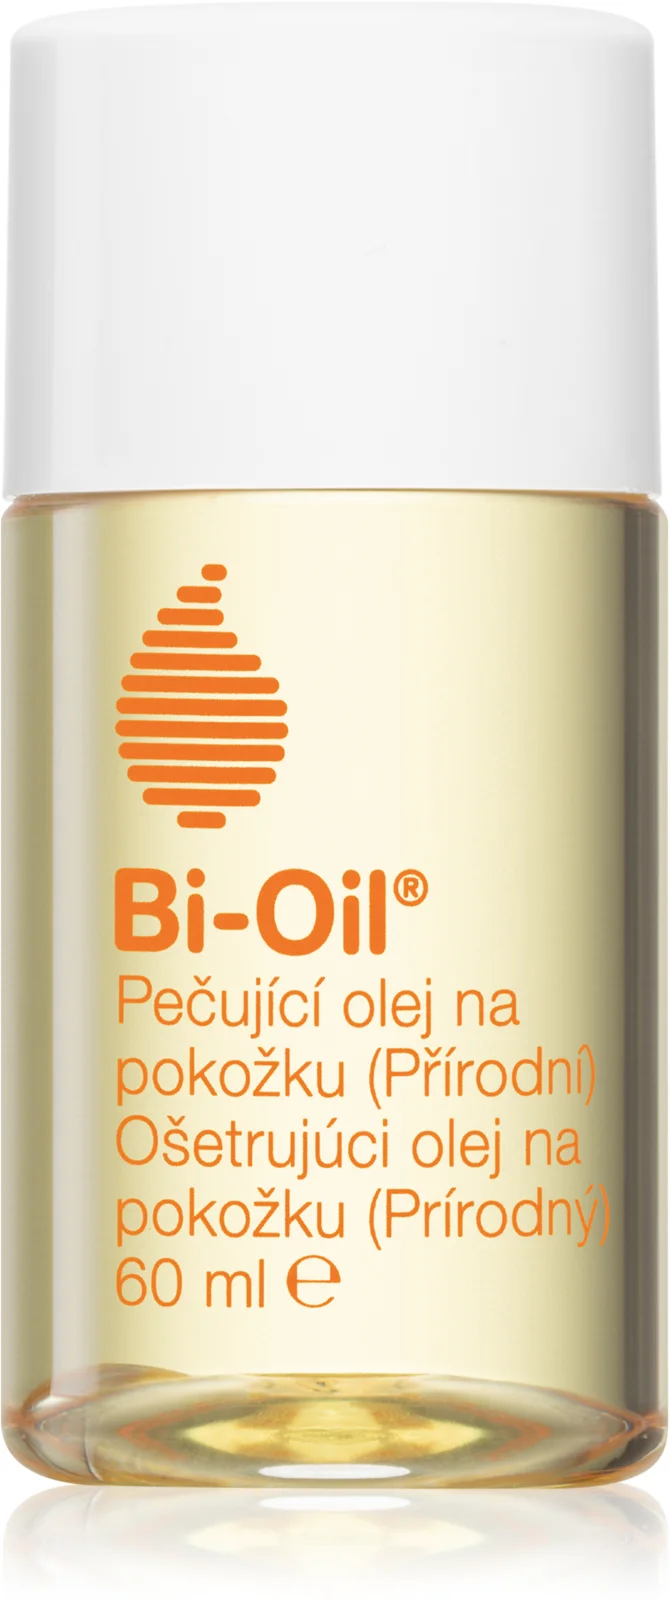 Nejlepší krémy na jizvy - Bi-Oil